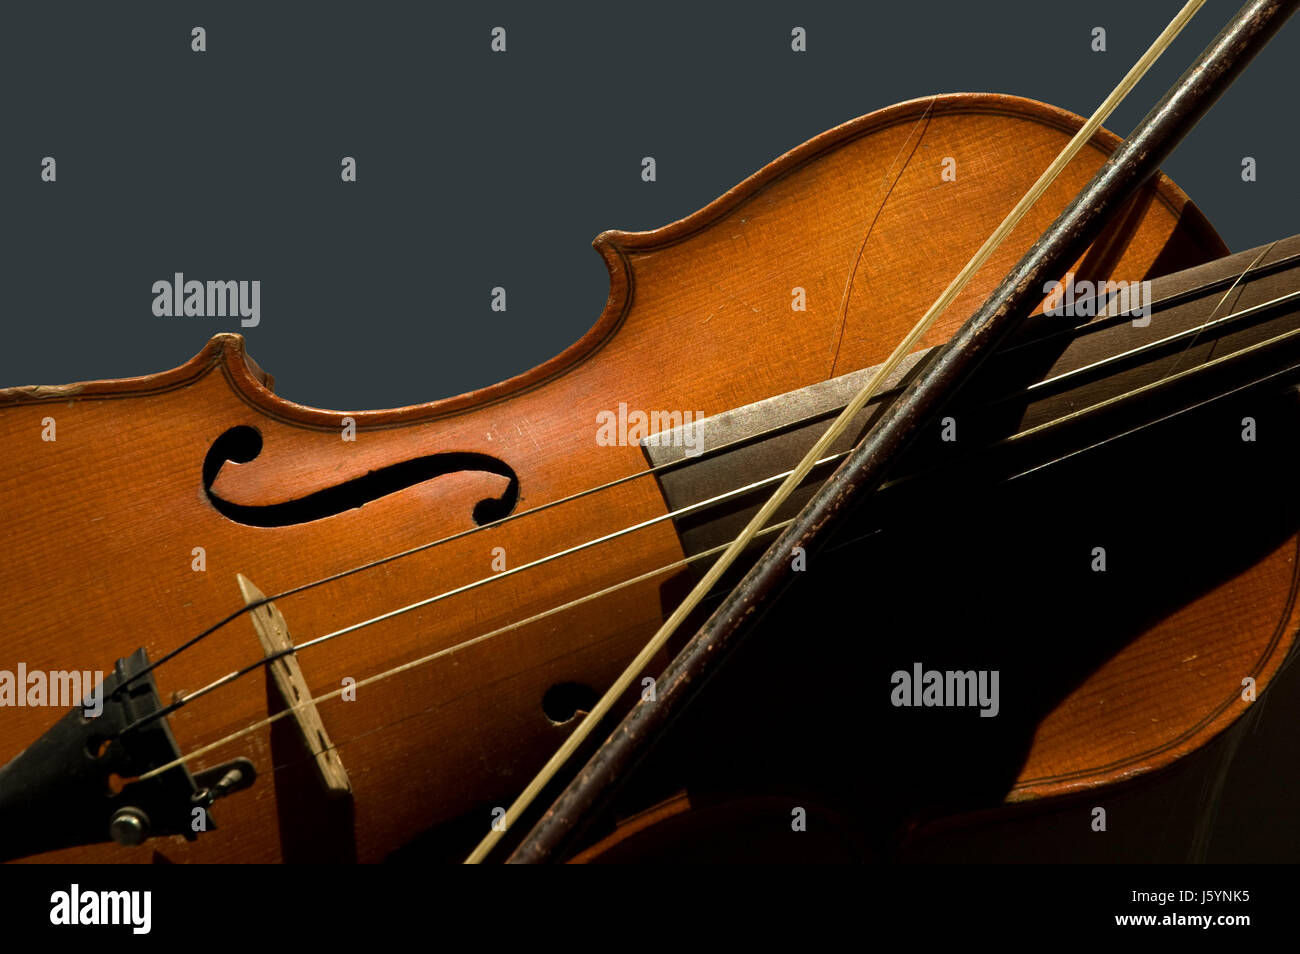 violín e imágenes de alta resolución - Alamy